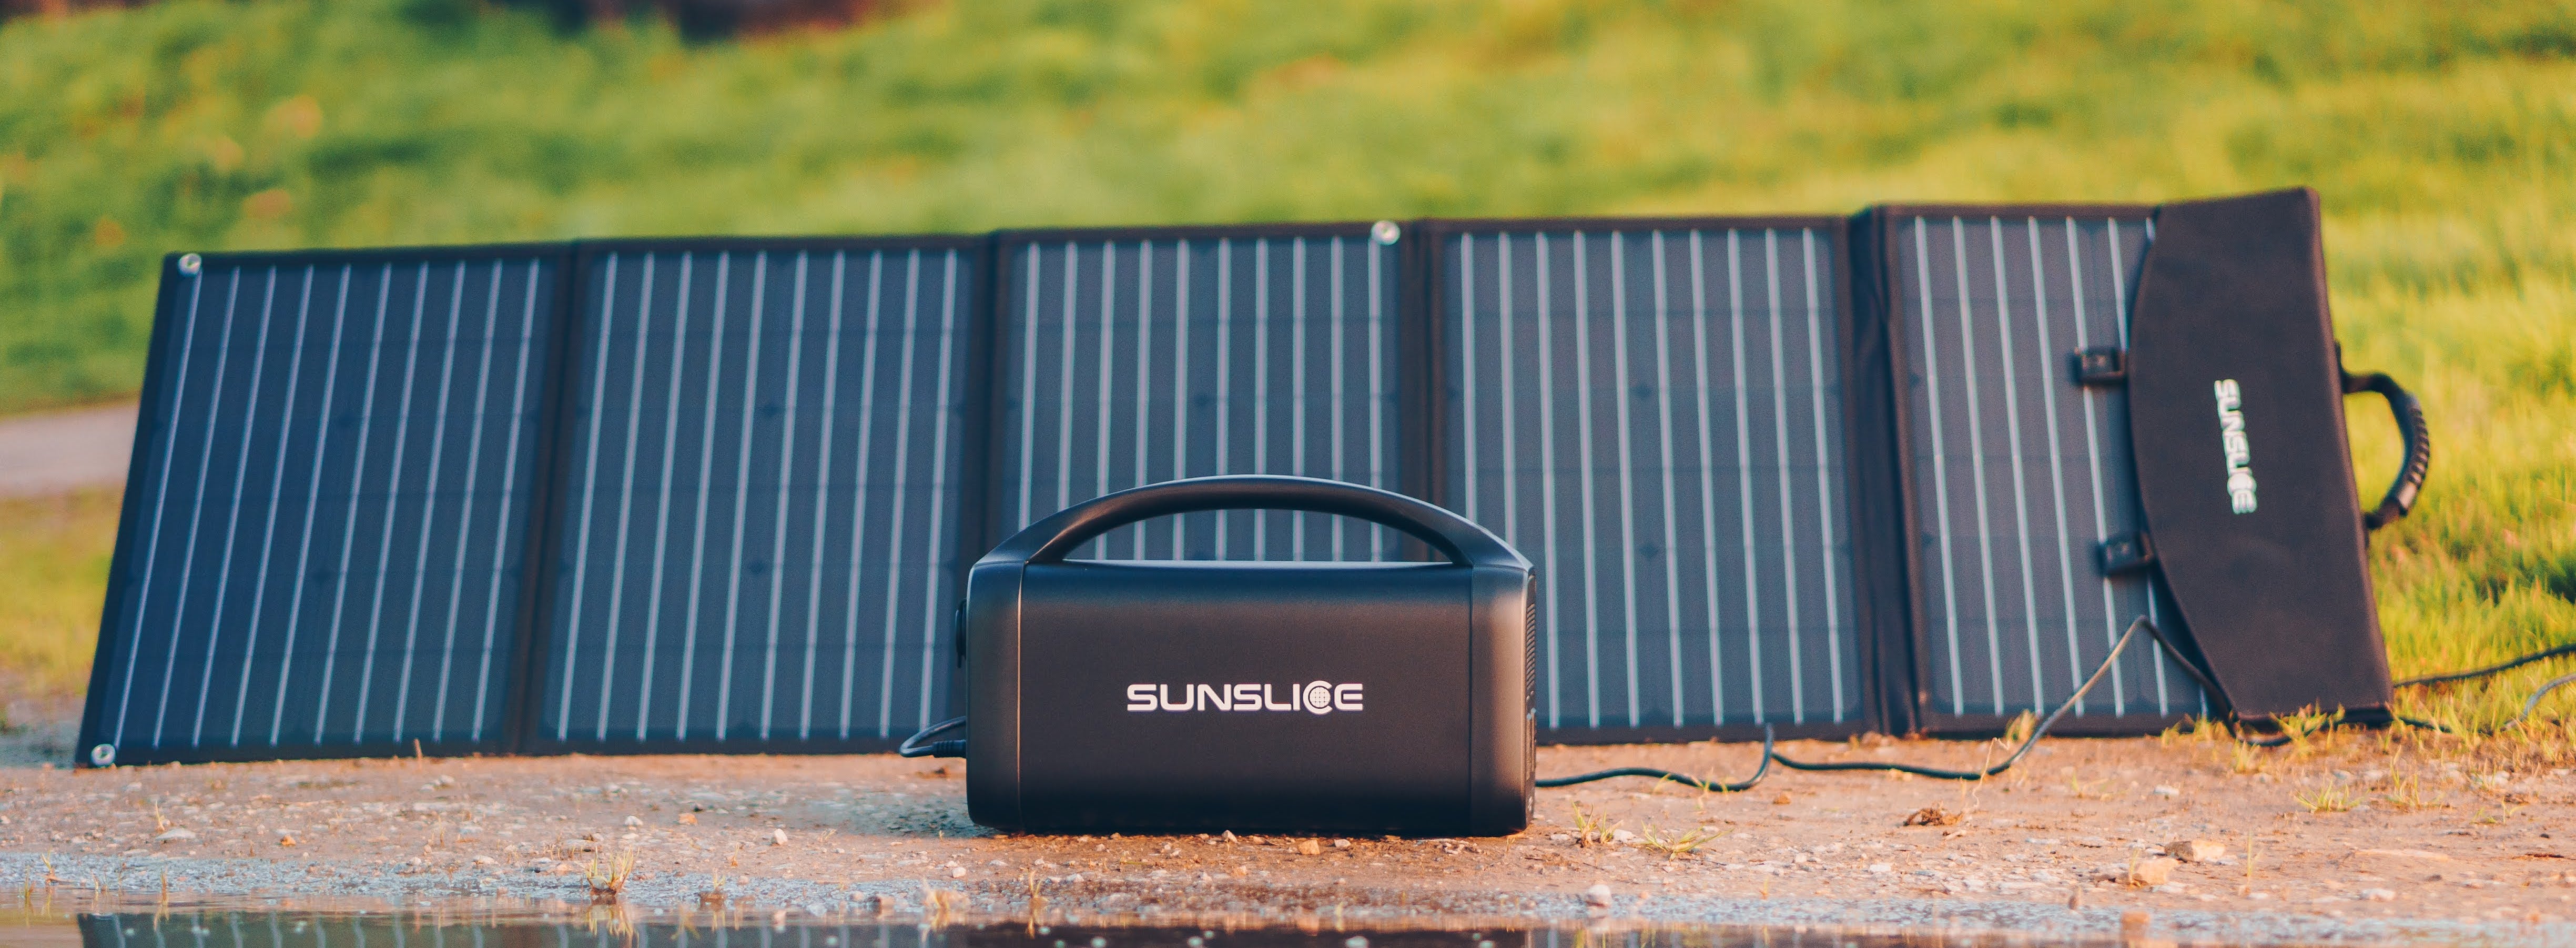 sunslice generator aangesloten op een solar USB geplaatst op de grond met een groene achtergrond